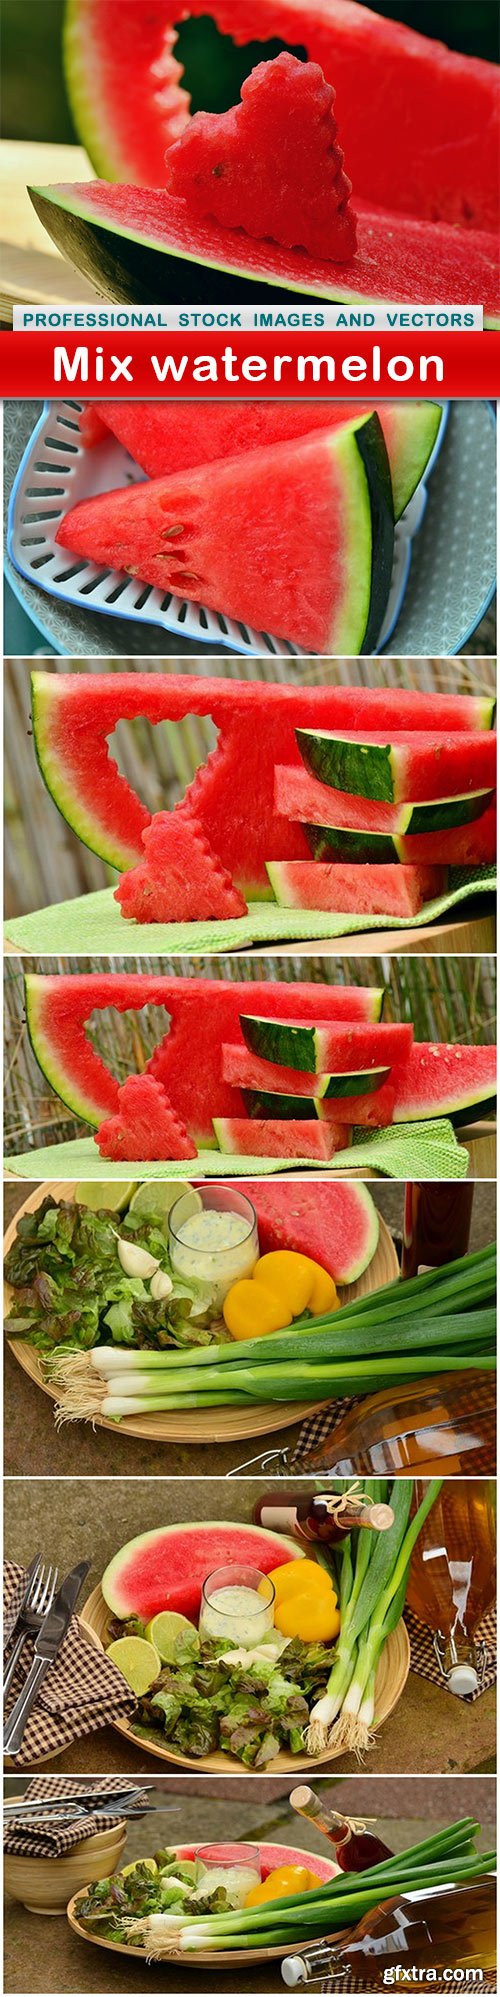 Mix watermelon - 7 UHQ JPEG